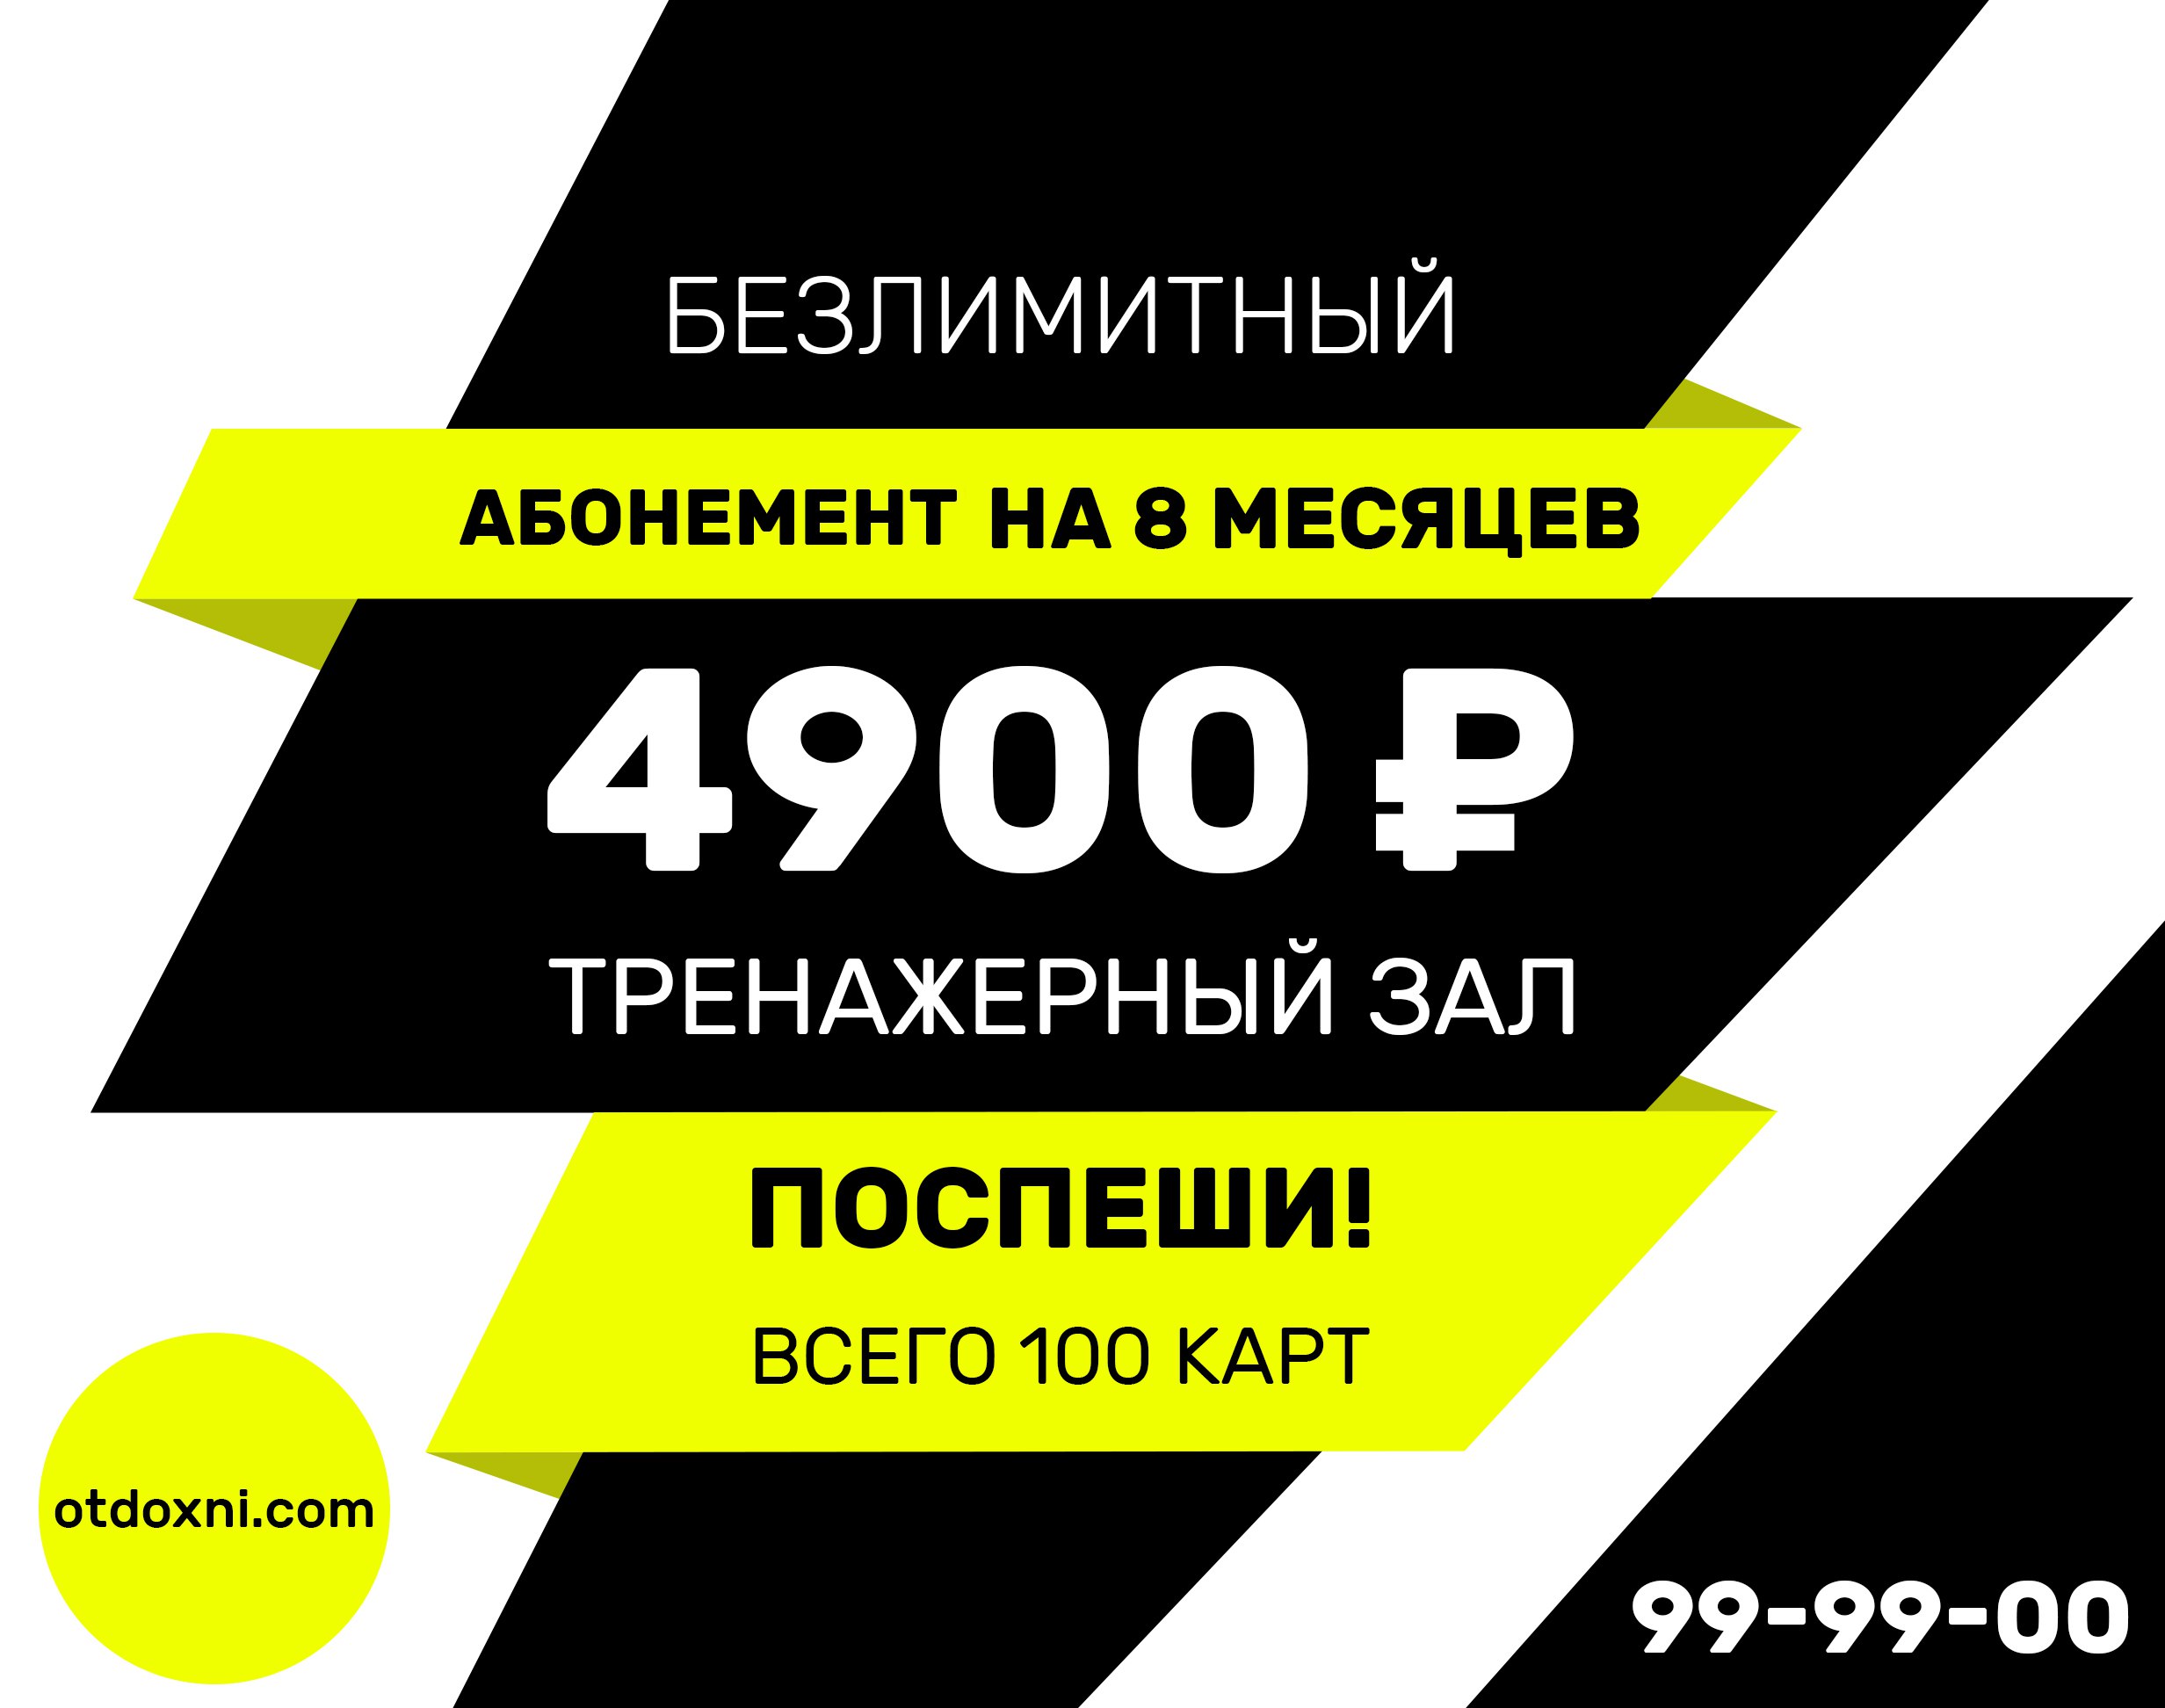 Абонемент в тренажерный зал на 8 месяцев за 4900 рублей